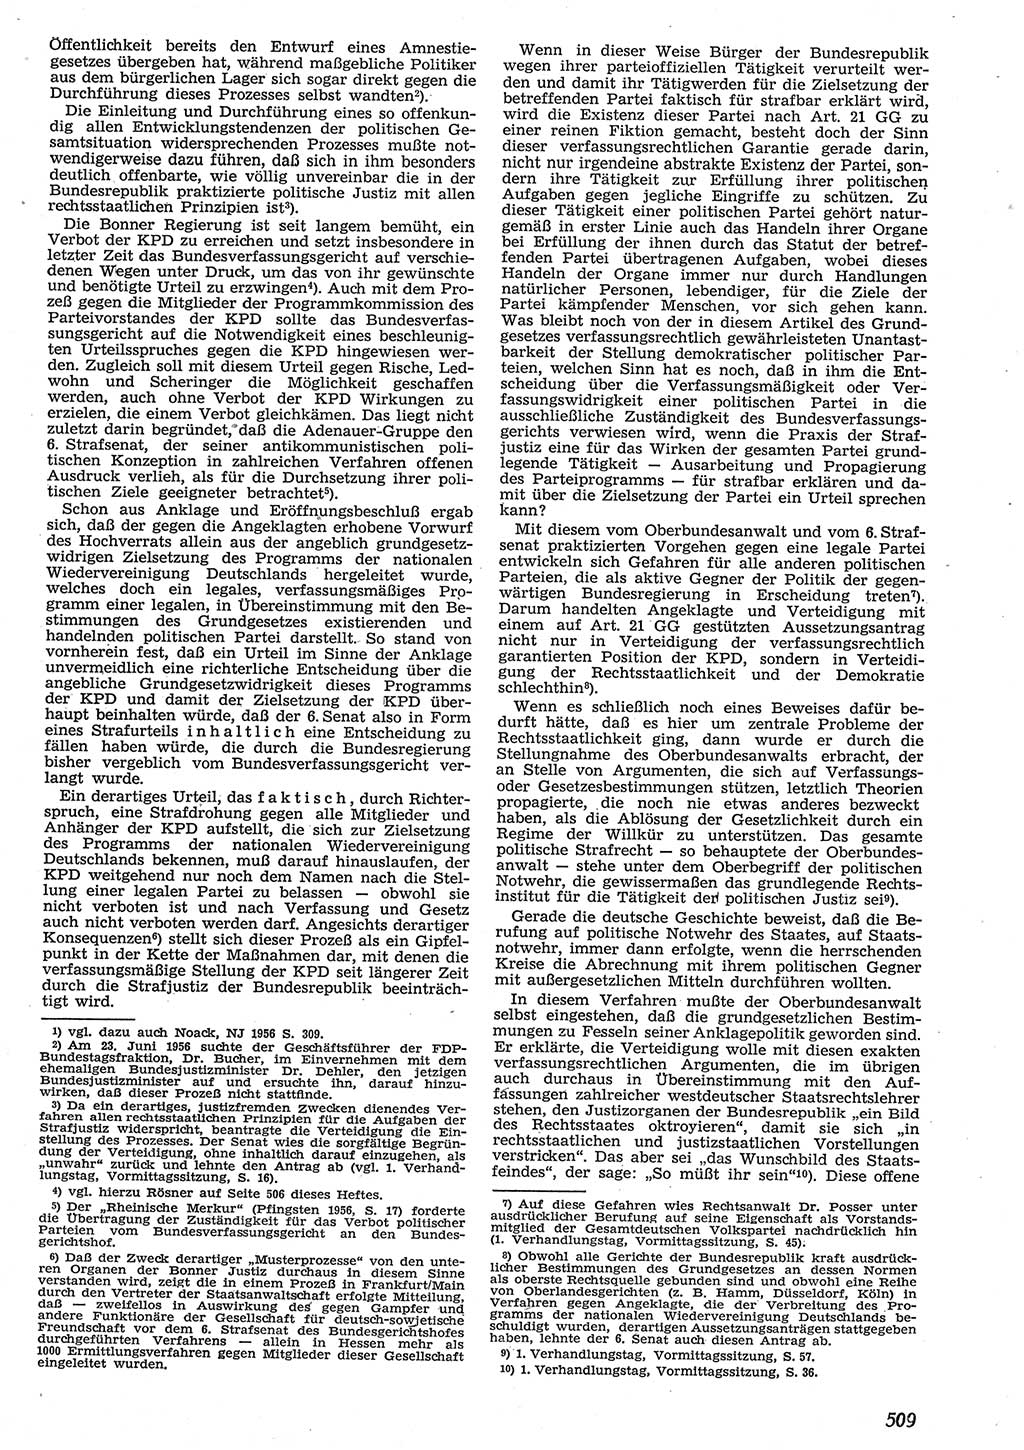 Neue Justiz (NJ), Zeitschrift für Recht und Rechtswissenschaft [Deutsche Demokratische Republik (DDR)], 10. Jahrgang 1956, Seite 509 (NJ DDR 1956, S. 509)